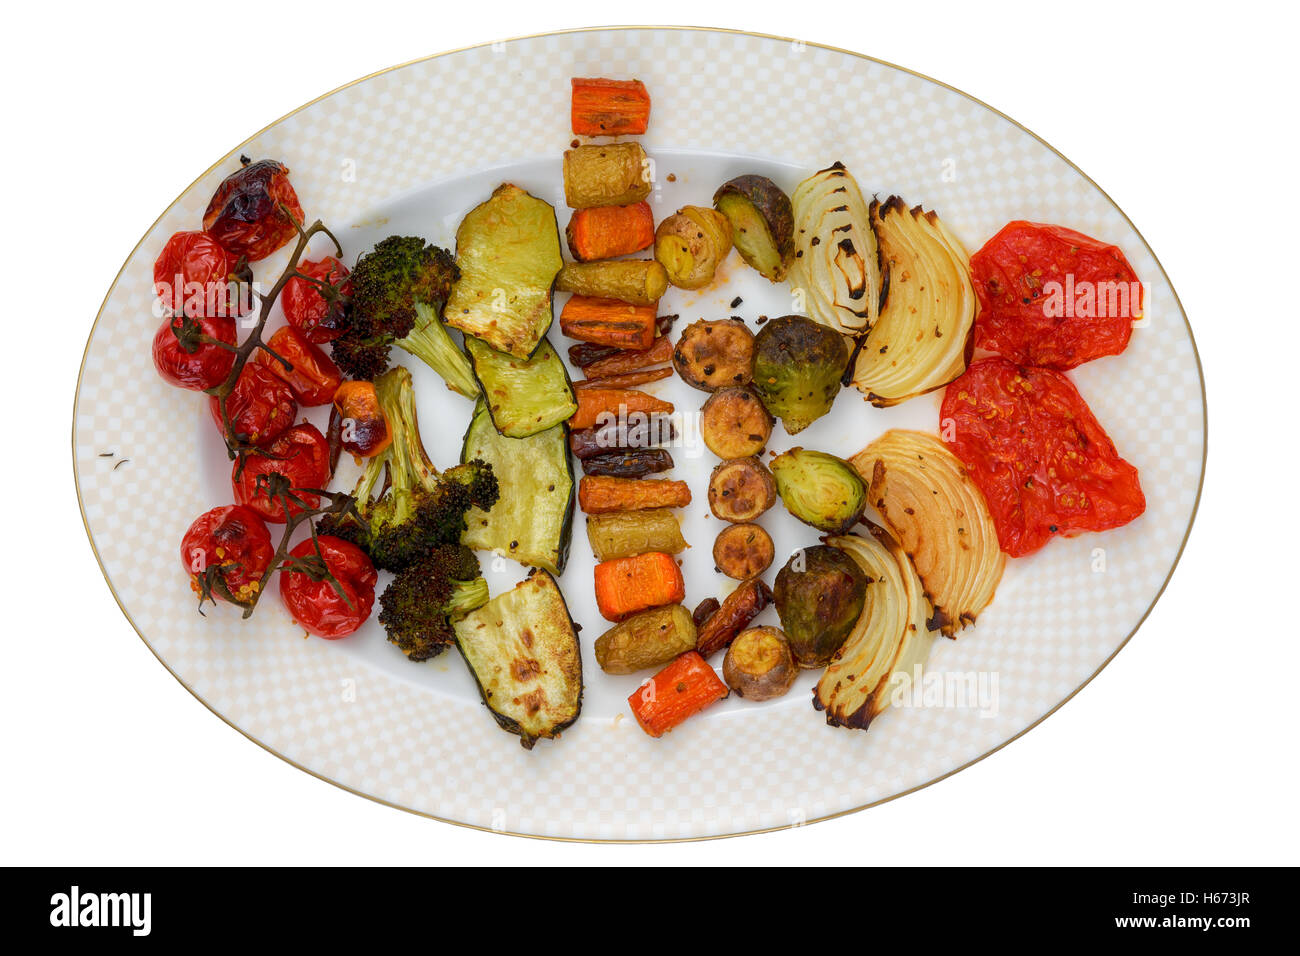 Vista superior de la placa oval o asado a la parrilla con tomates cherry, brócoli, calabaza, zanahorias y otras verduras en Delicious Foto de stock